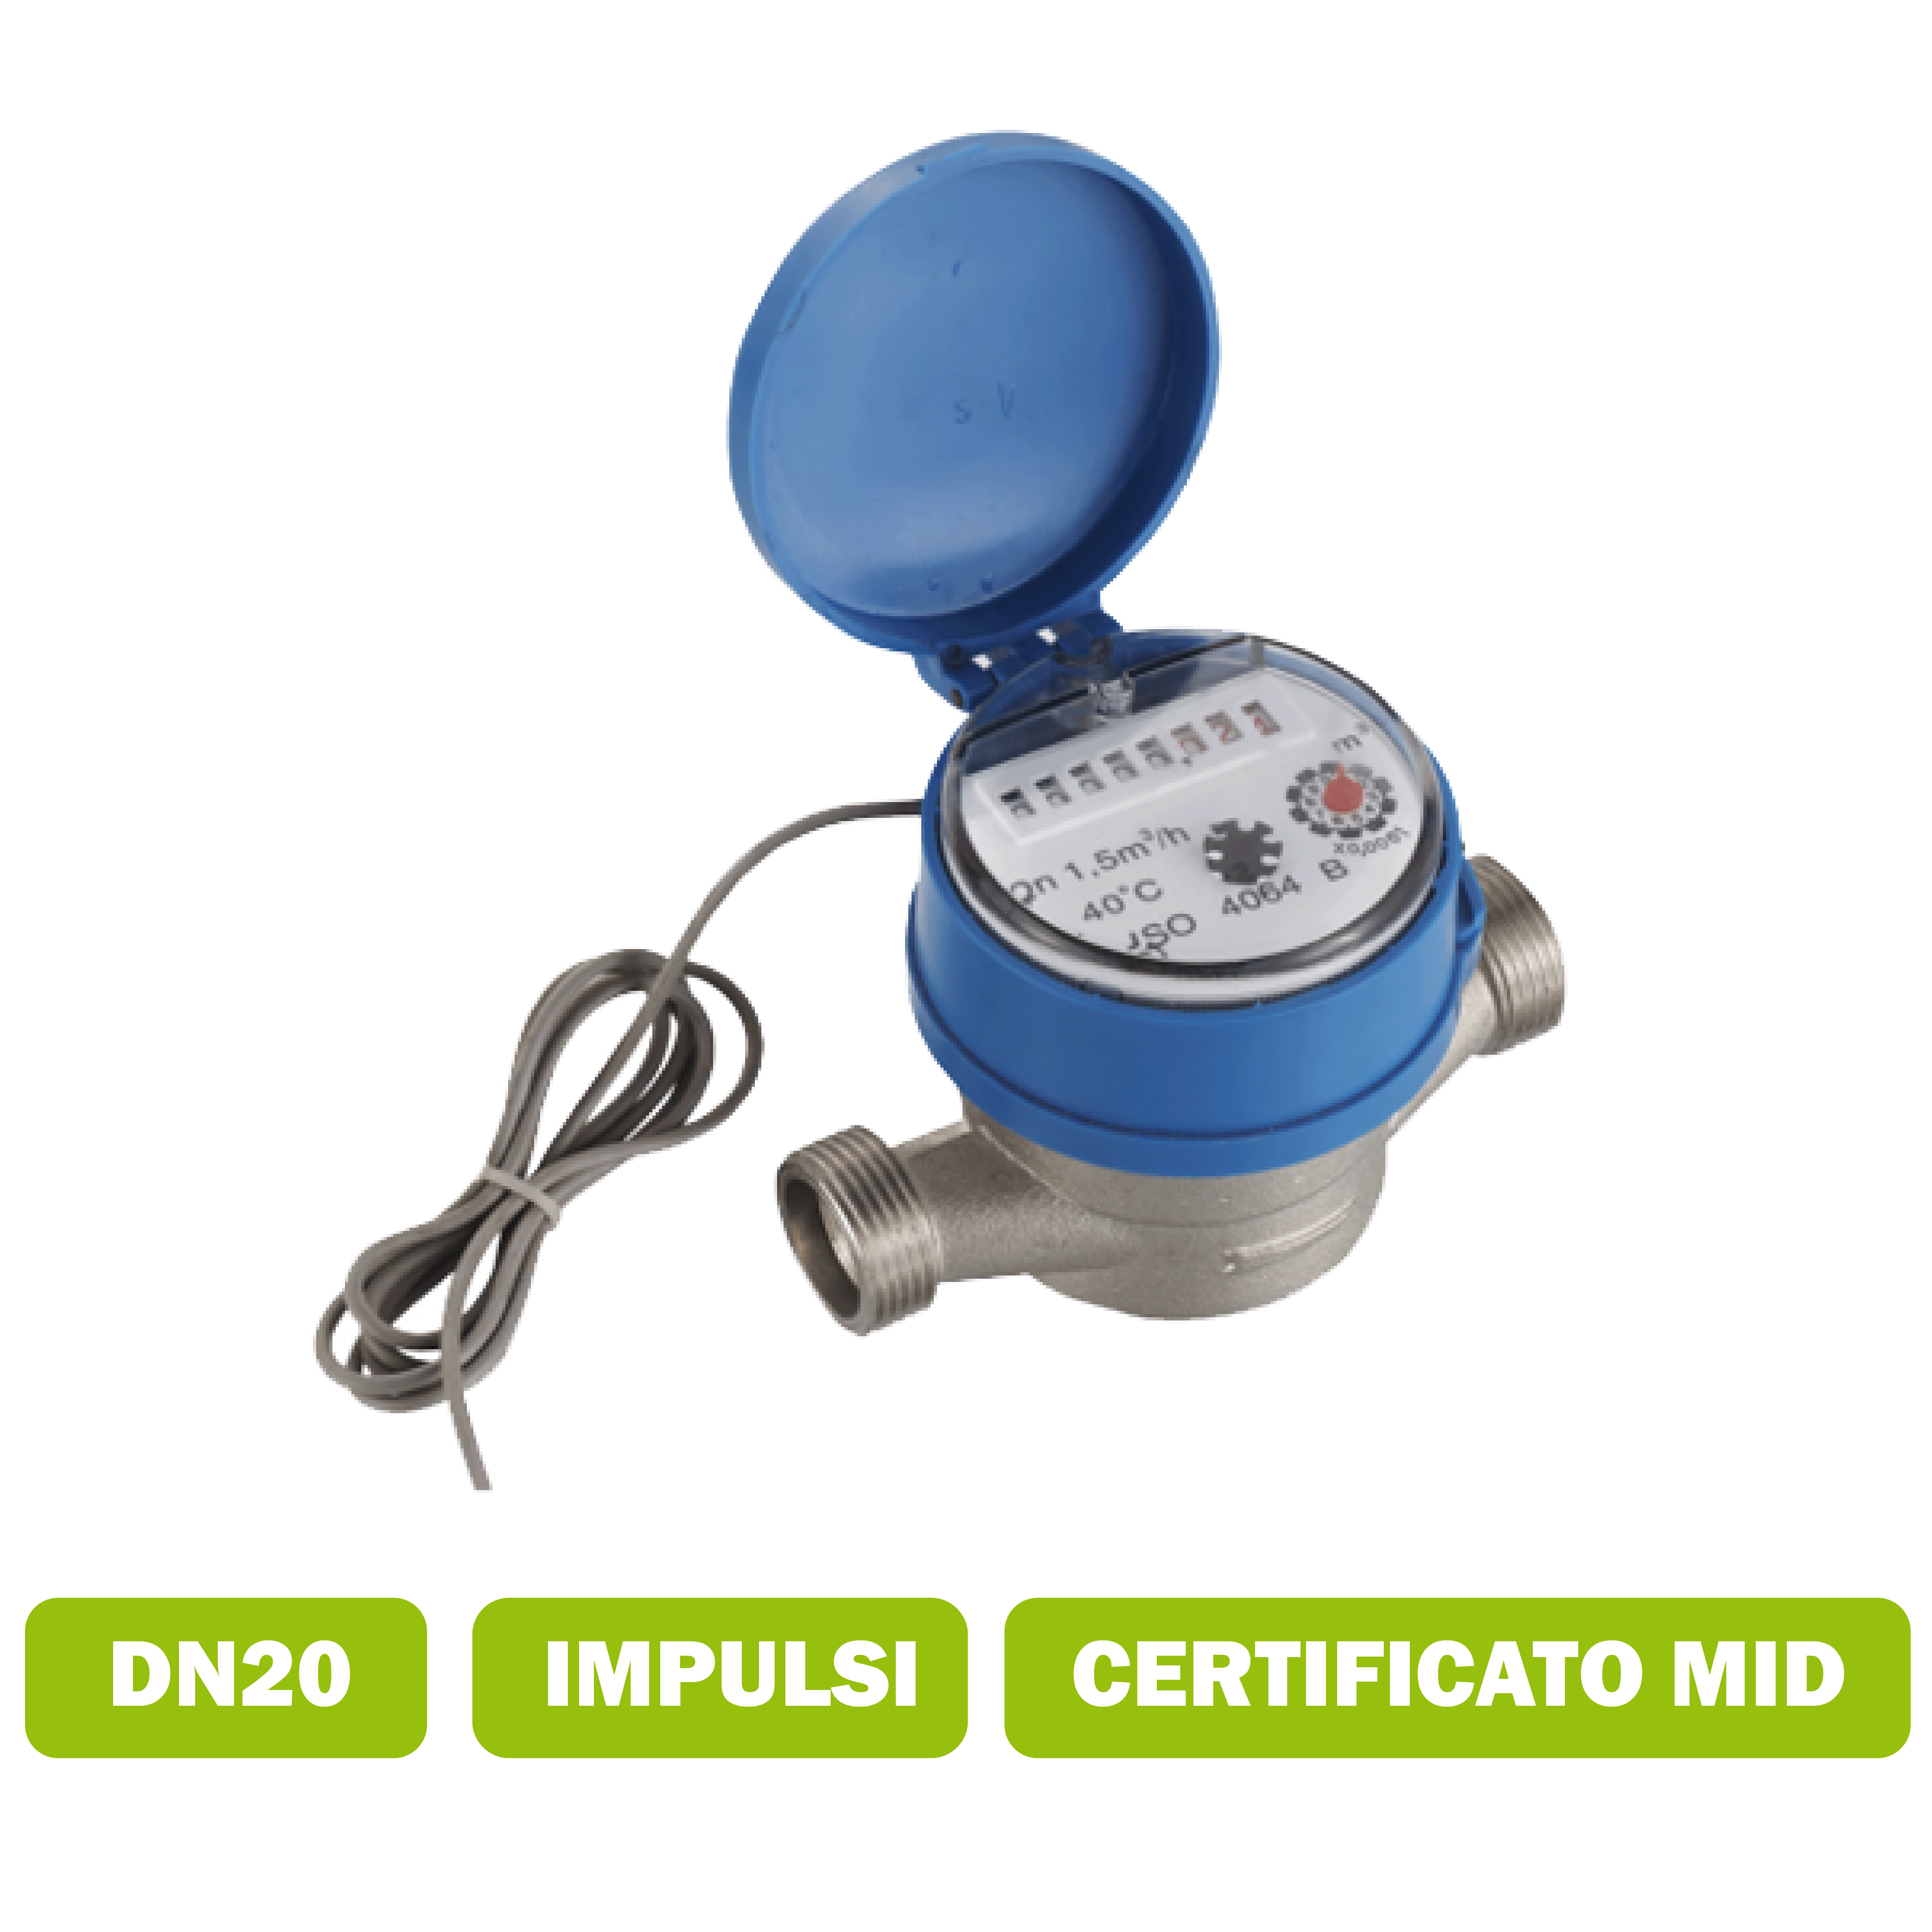 Water meter per acqua fredda (50°C) getto singolo DN20 portata media 4.0 m3/h con interfaccia impulsi certificato MID